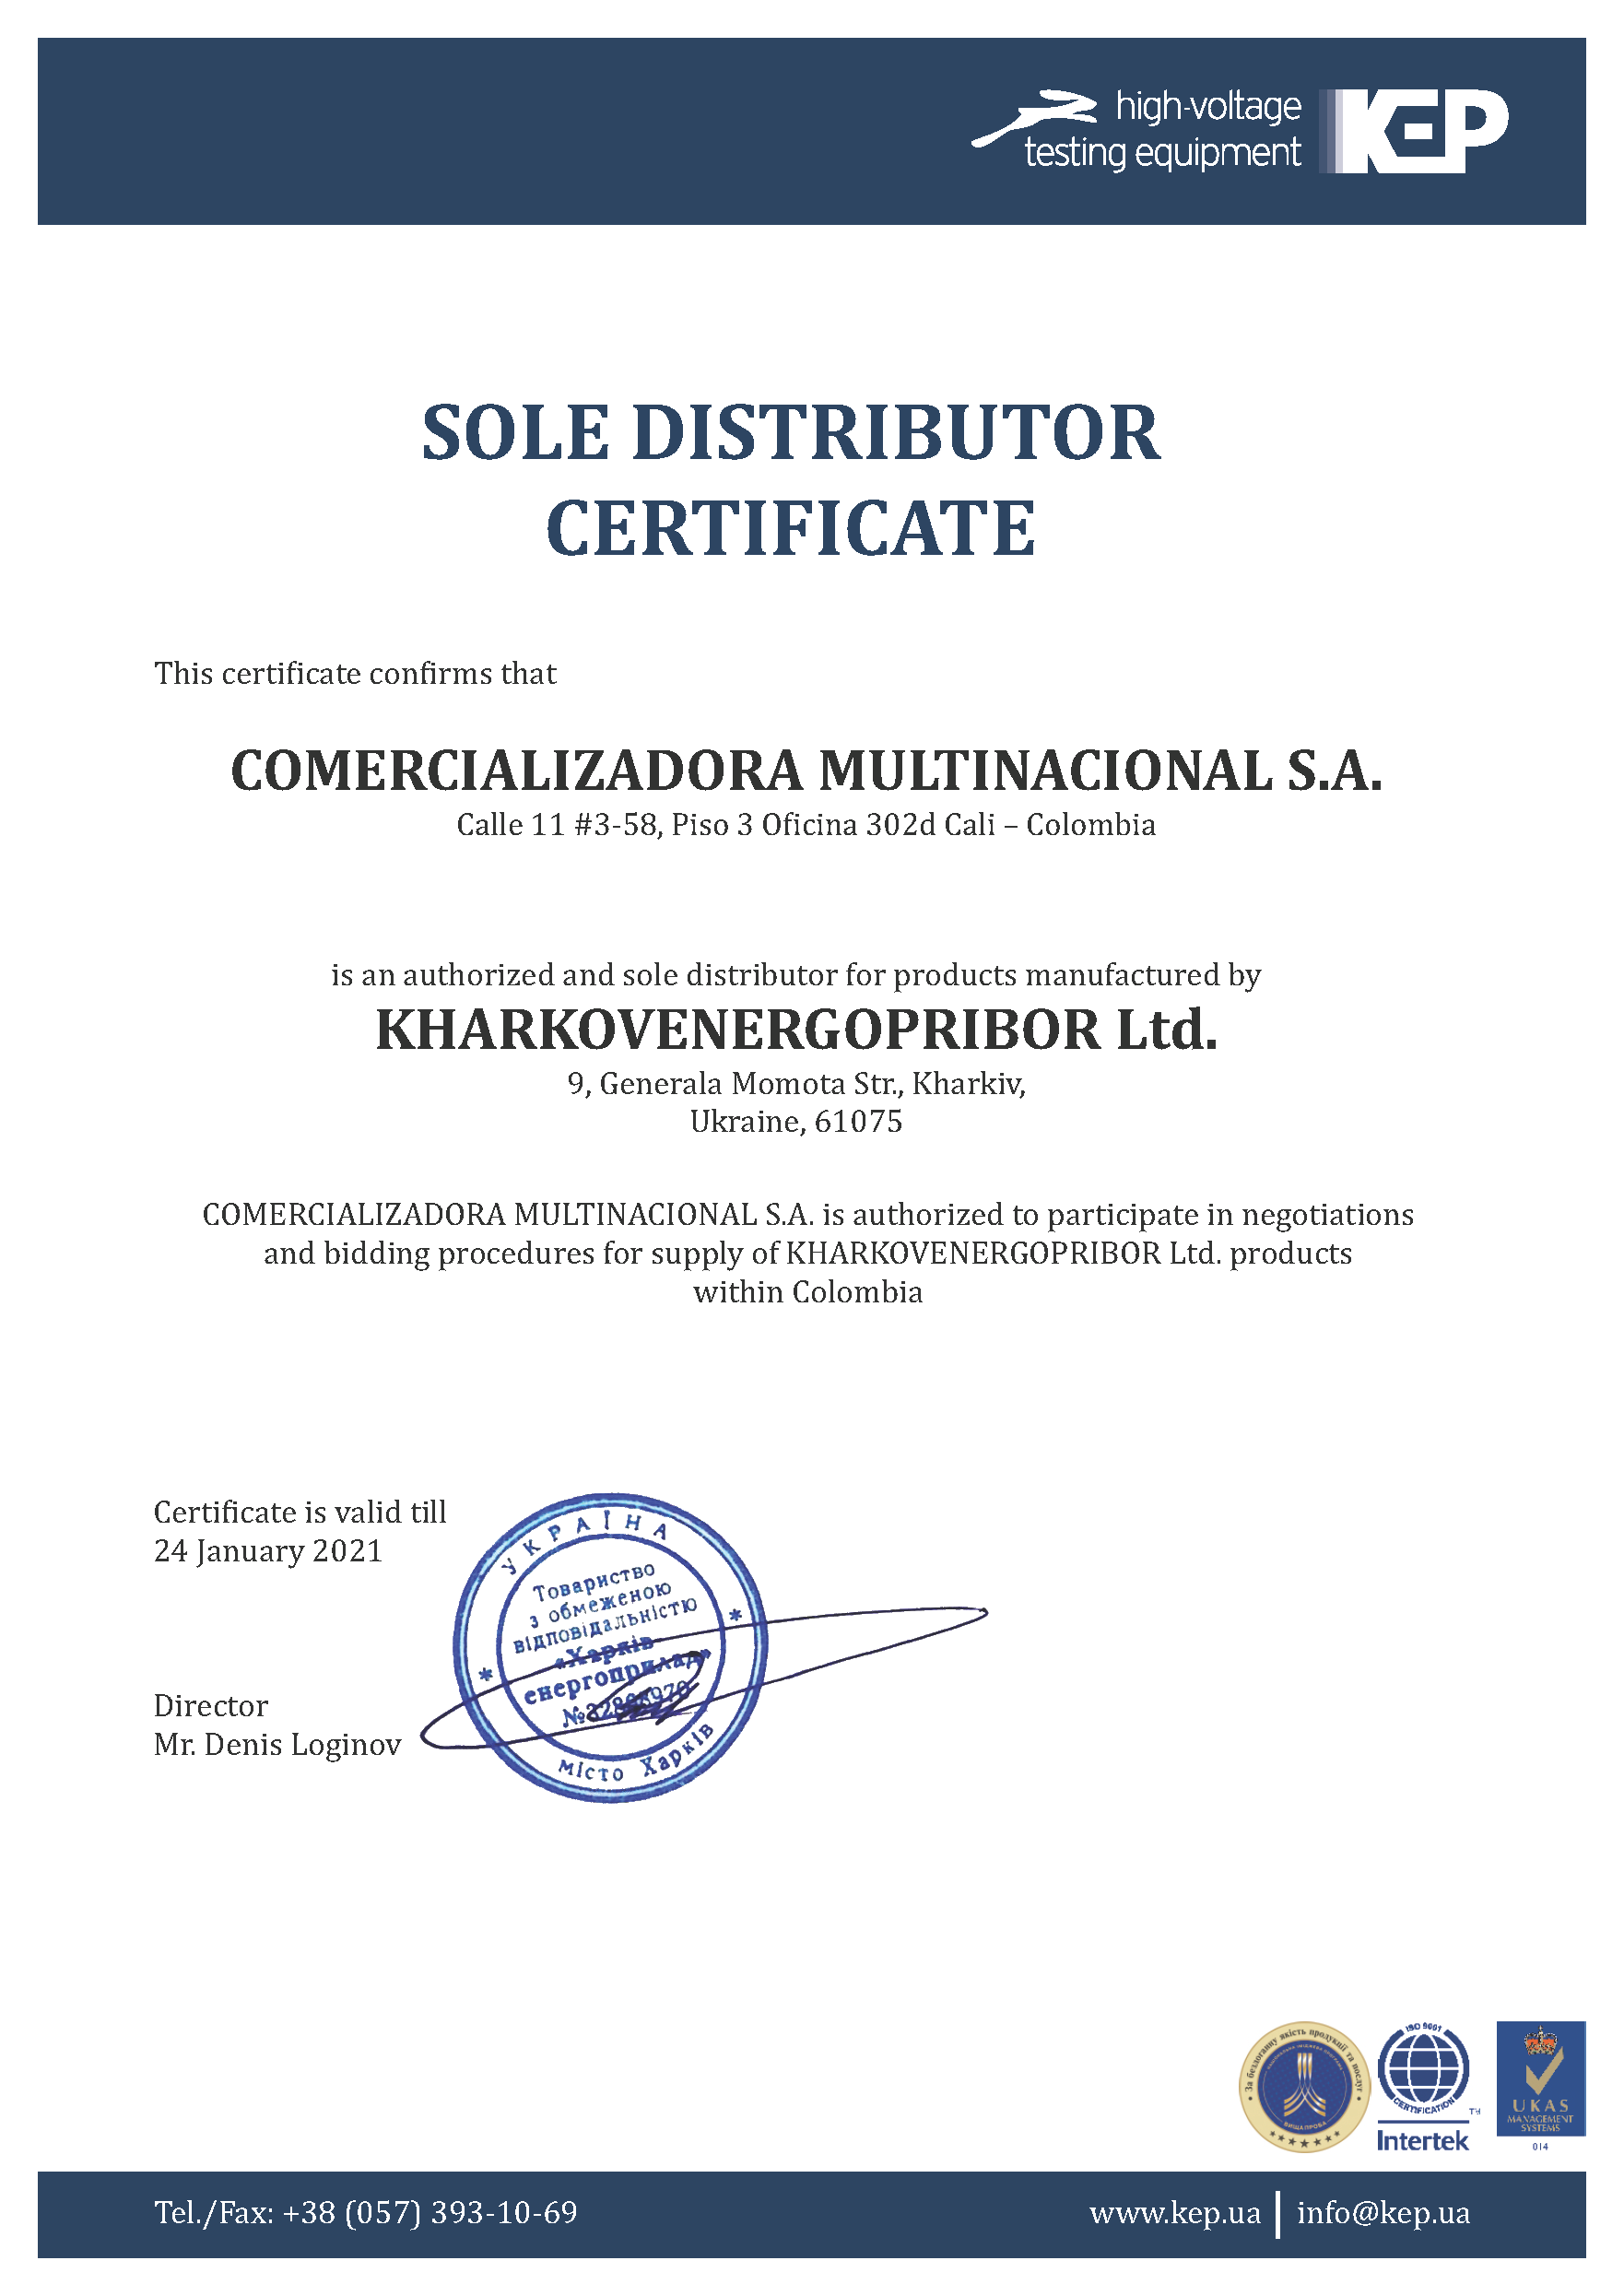 Официальным представителем KharkovEnergoPribor Ltd. в Колумбии